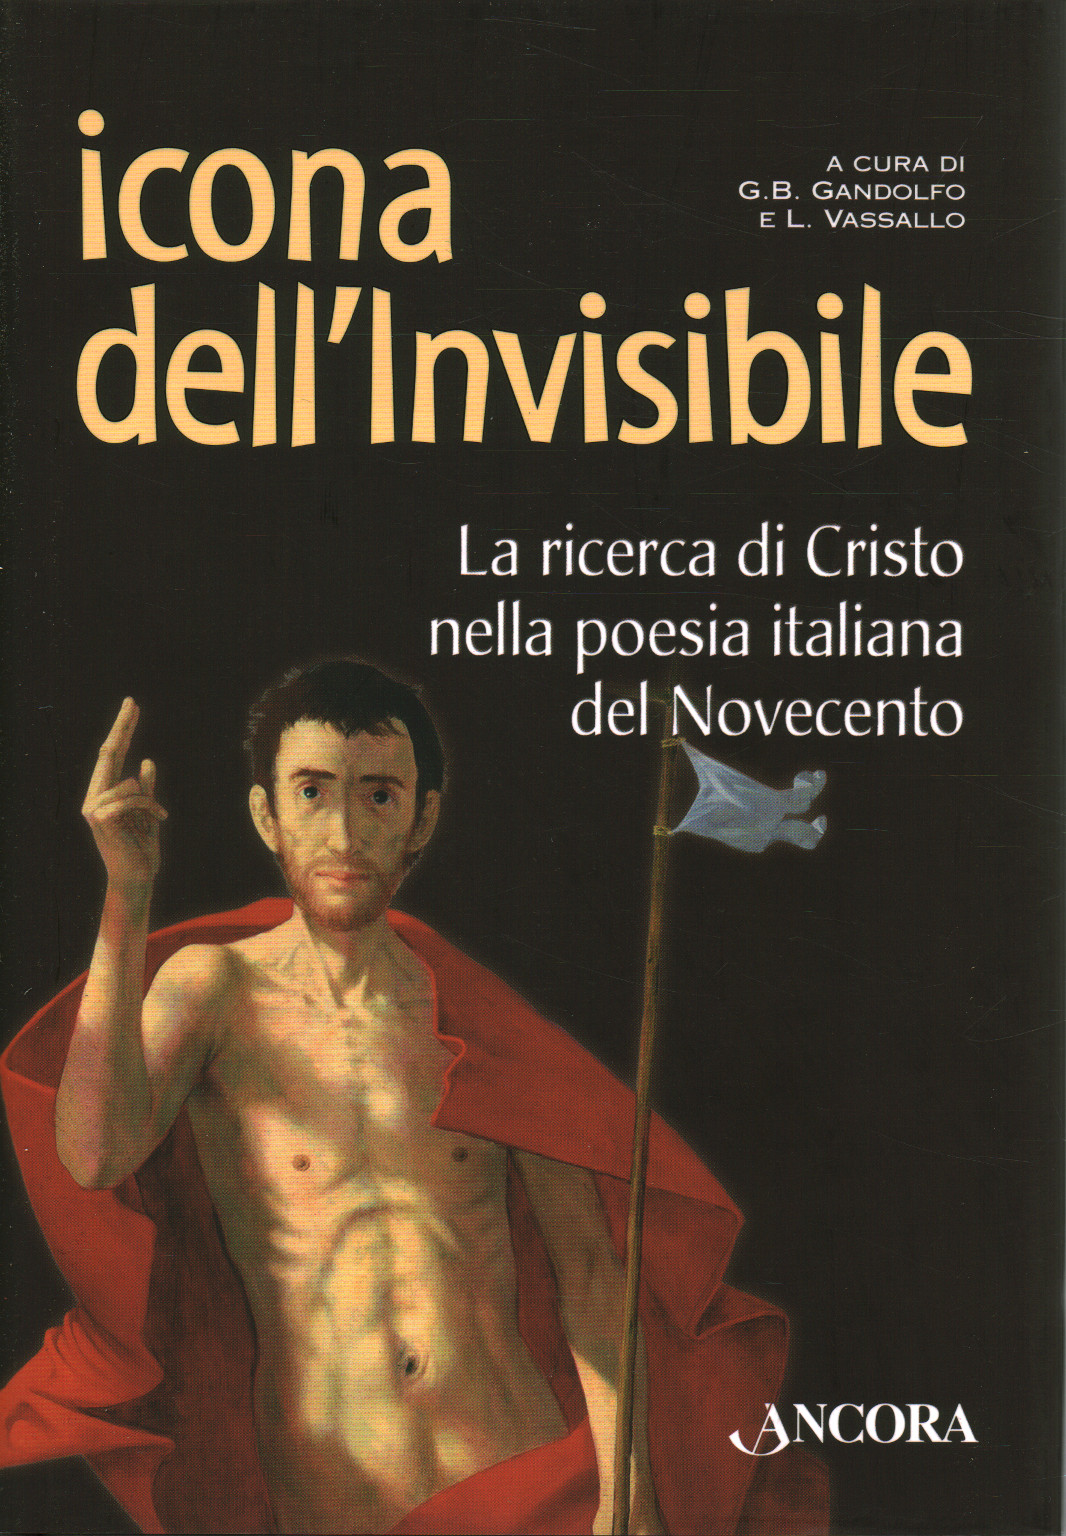 Icona dell invisibile, s.a.